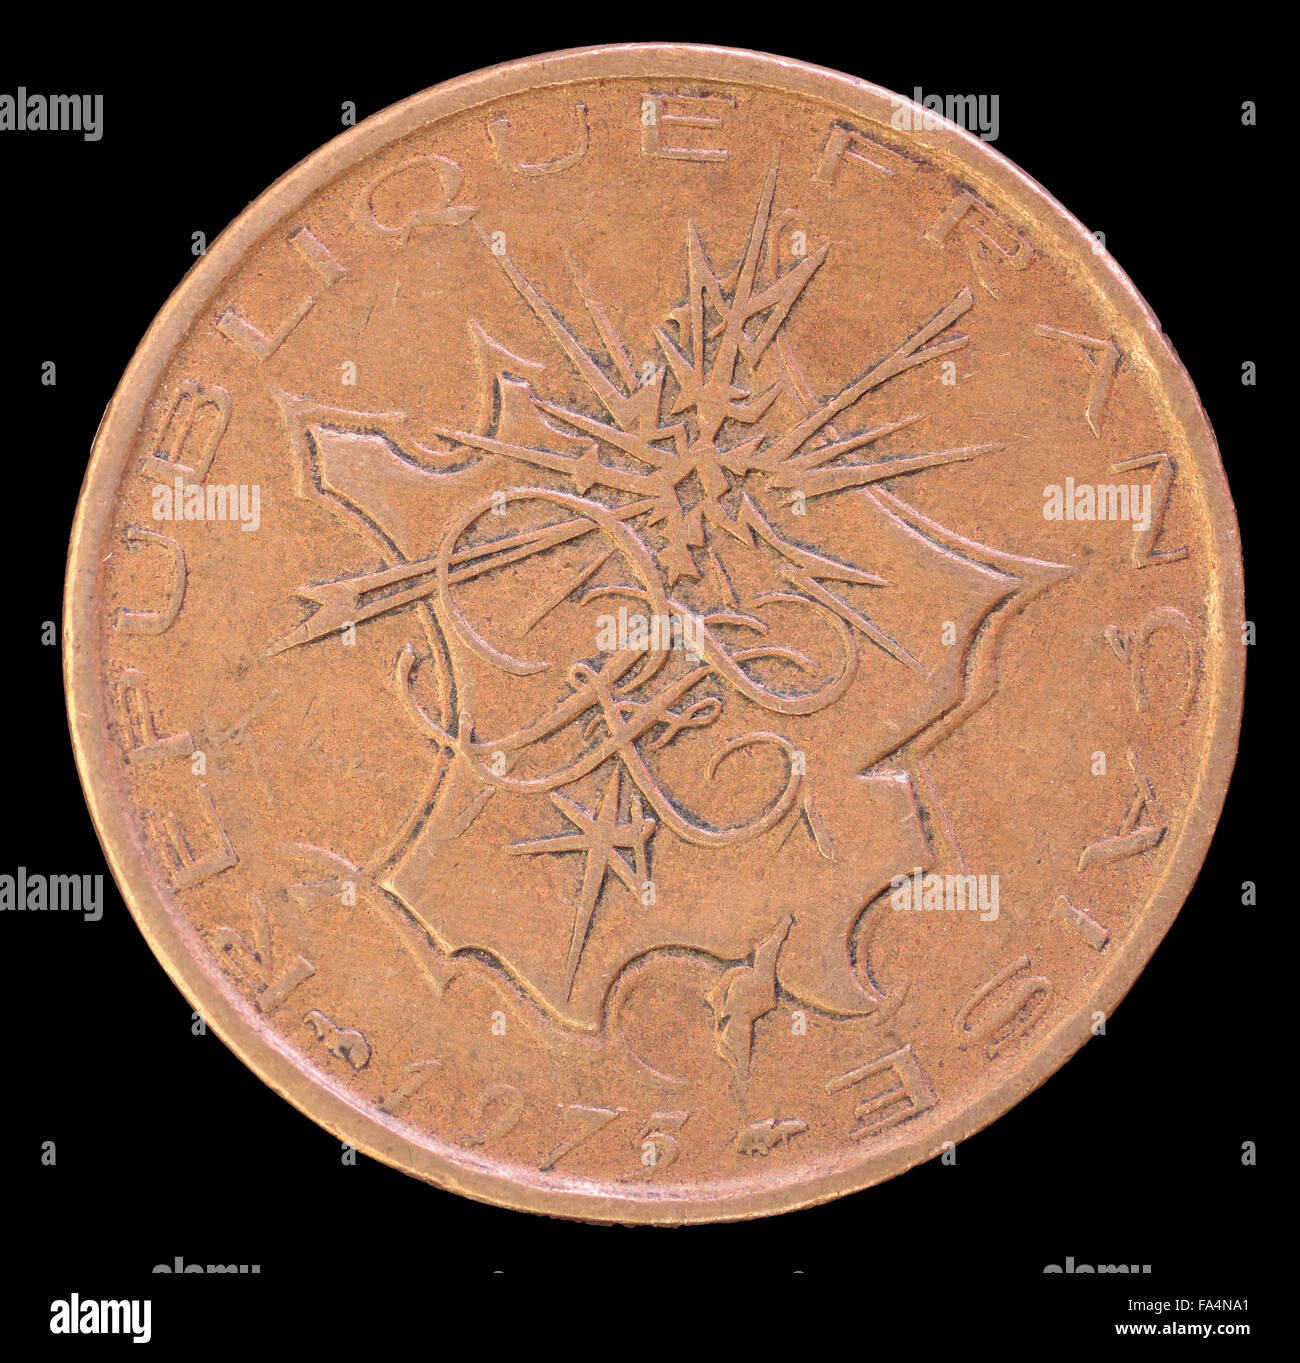 La faccia di testa di 10 franchi, monete emesse dalla Francia nel 1975, raffigurante una mappa della Francia metropolitana con i flash che puntano a Parigi Foto Stock